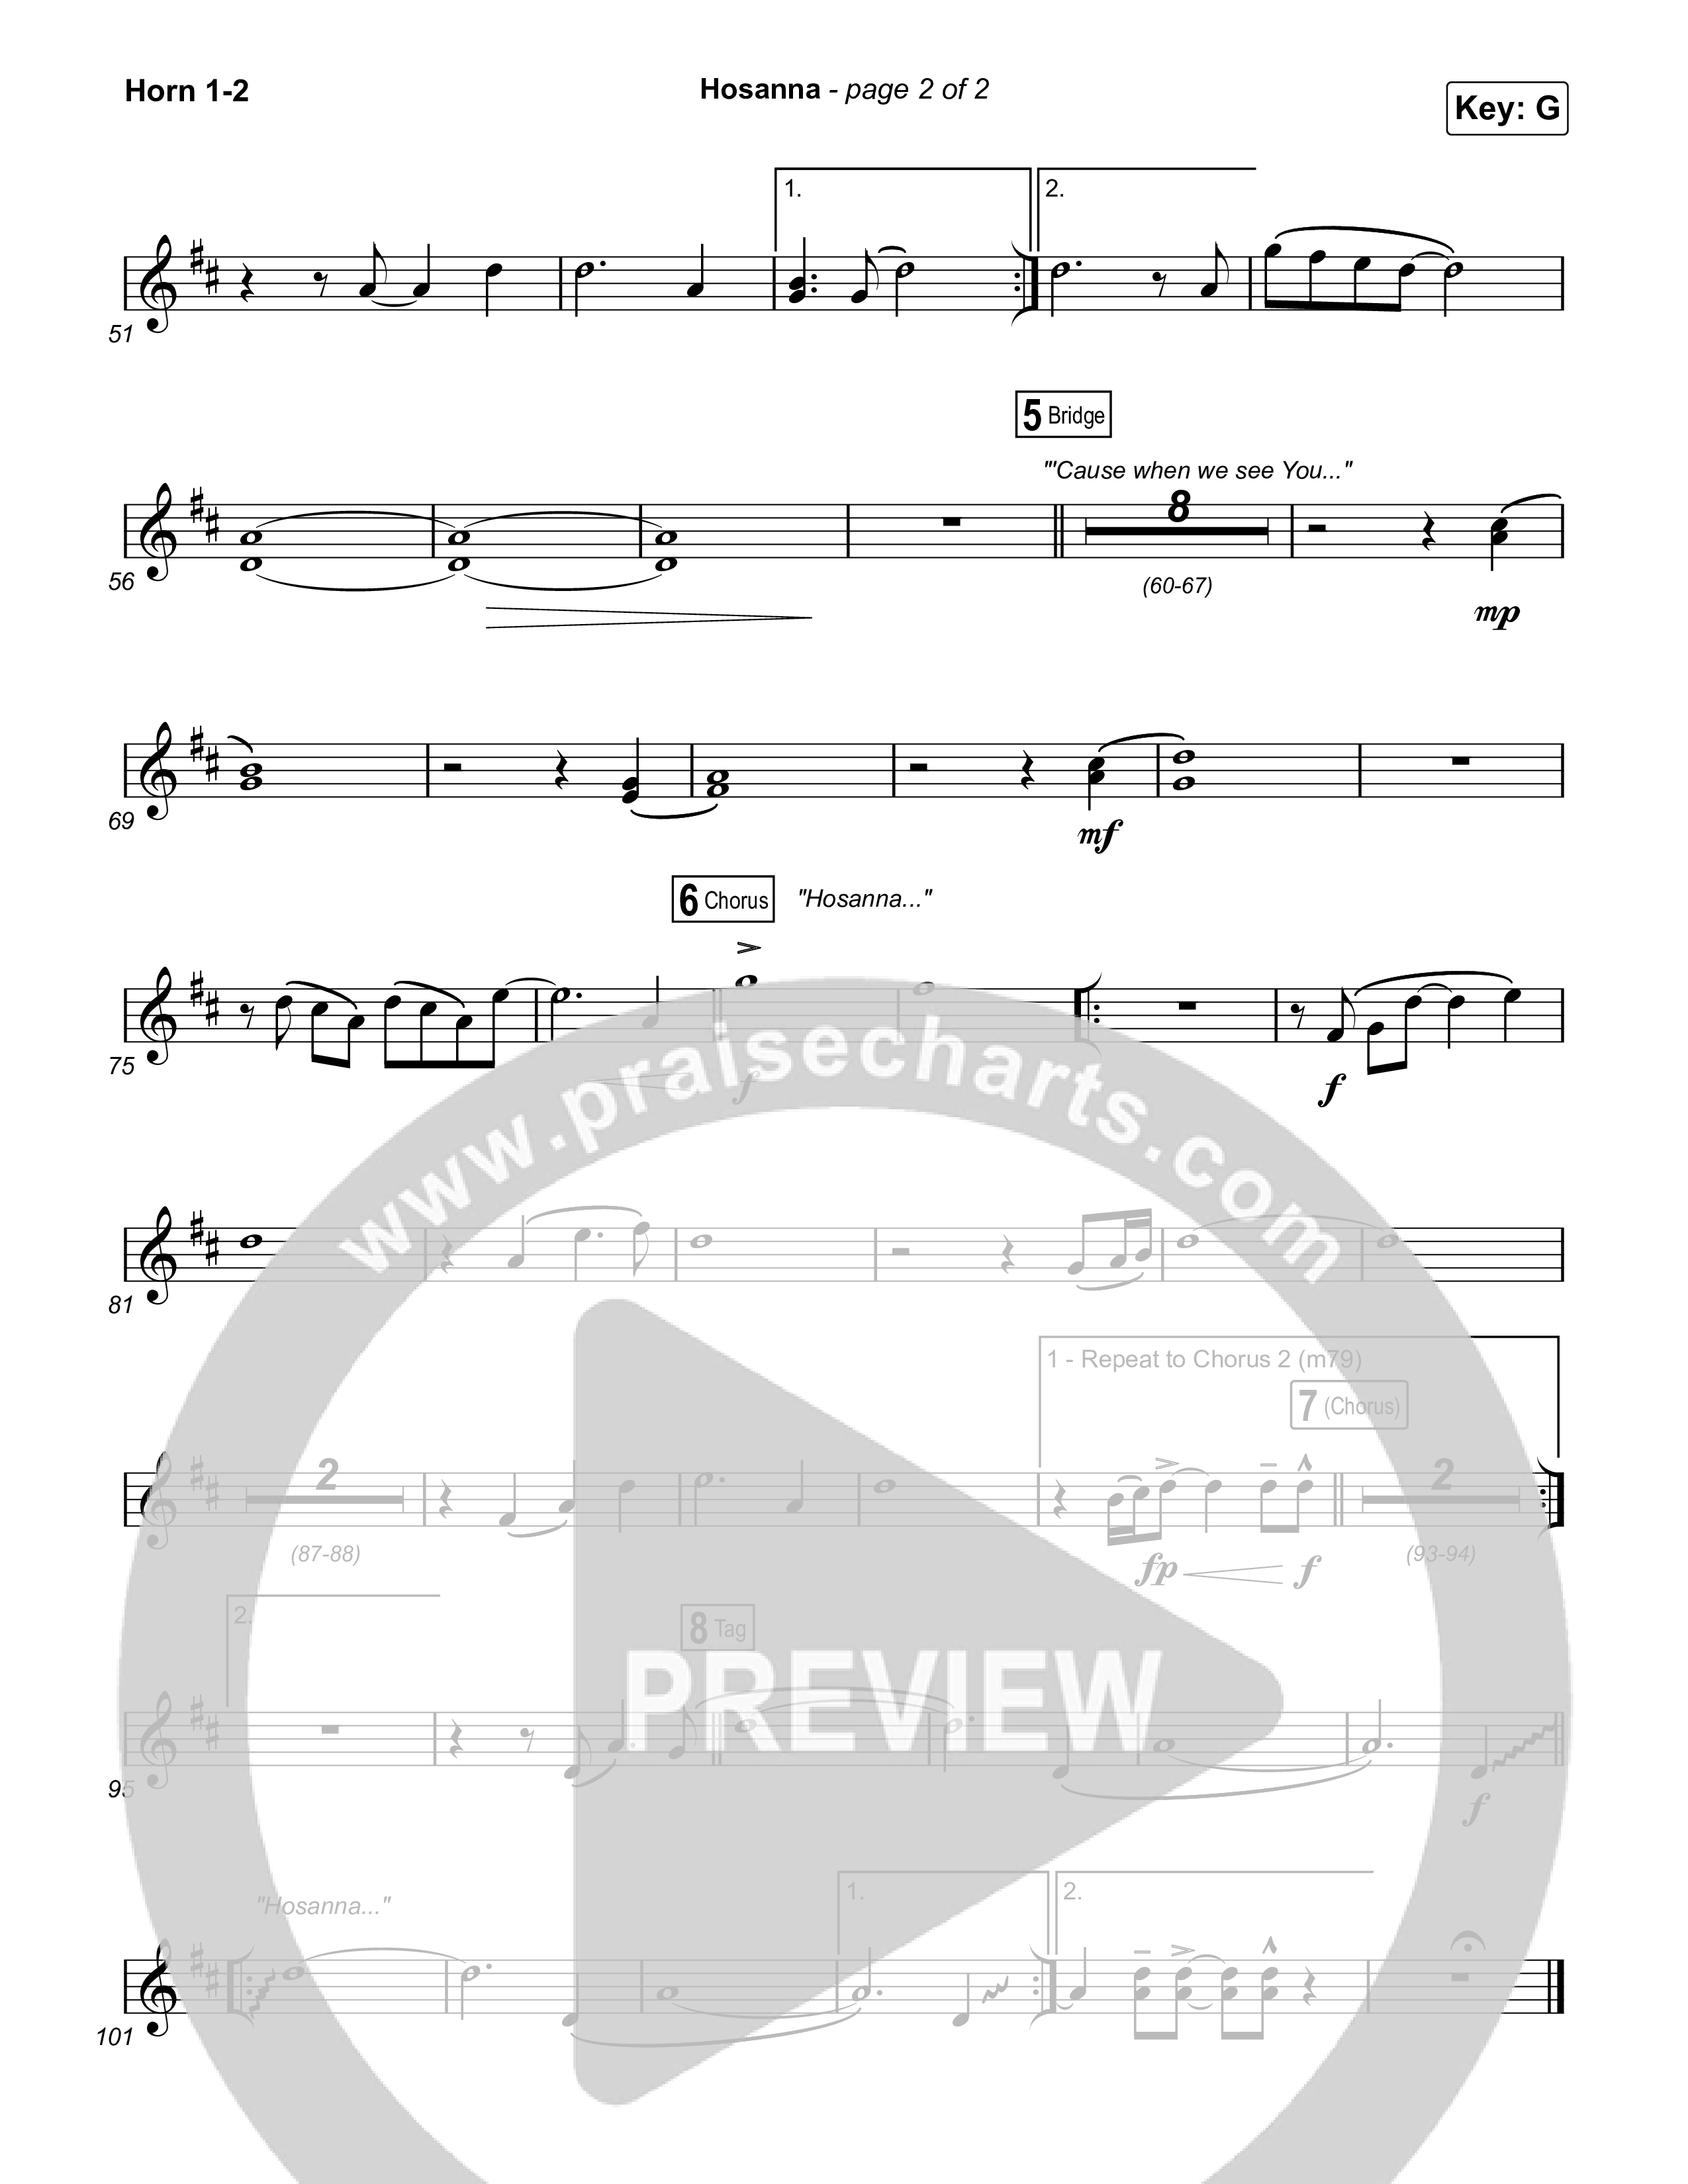 Hosanna (Praise Is Rising) French Horn 1/2 (Paul Baloche)